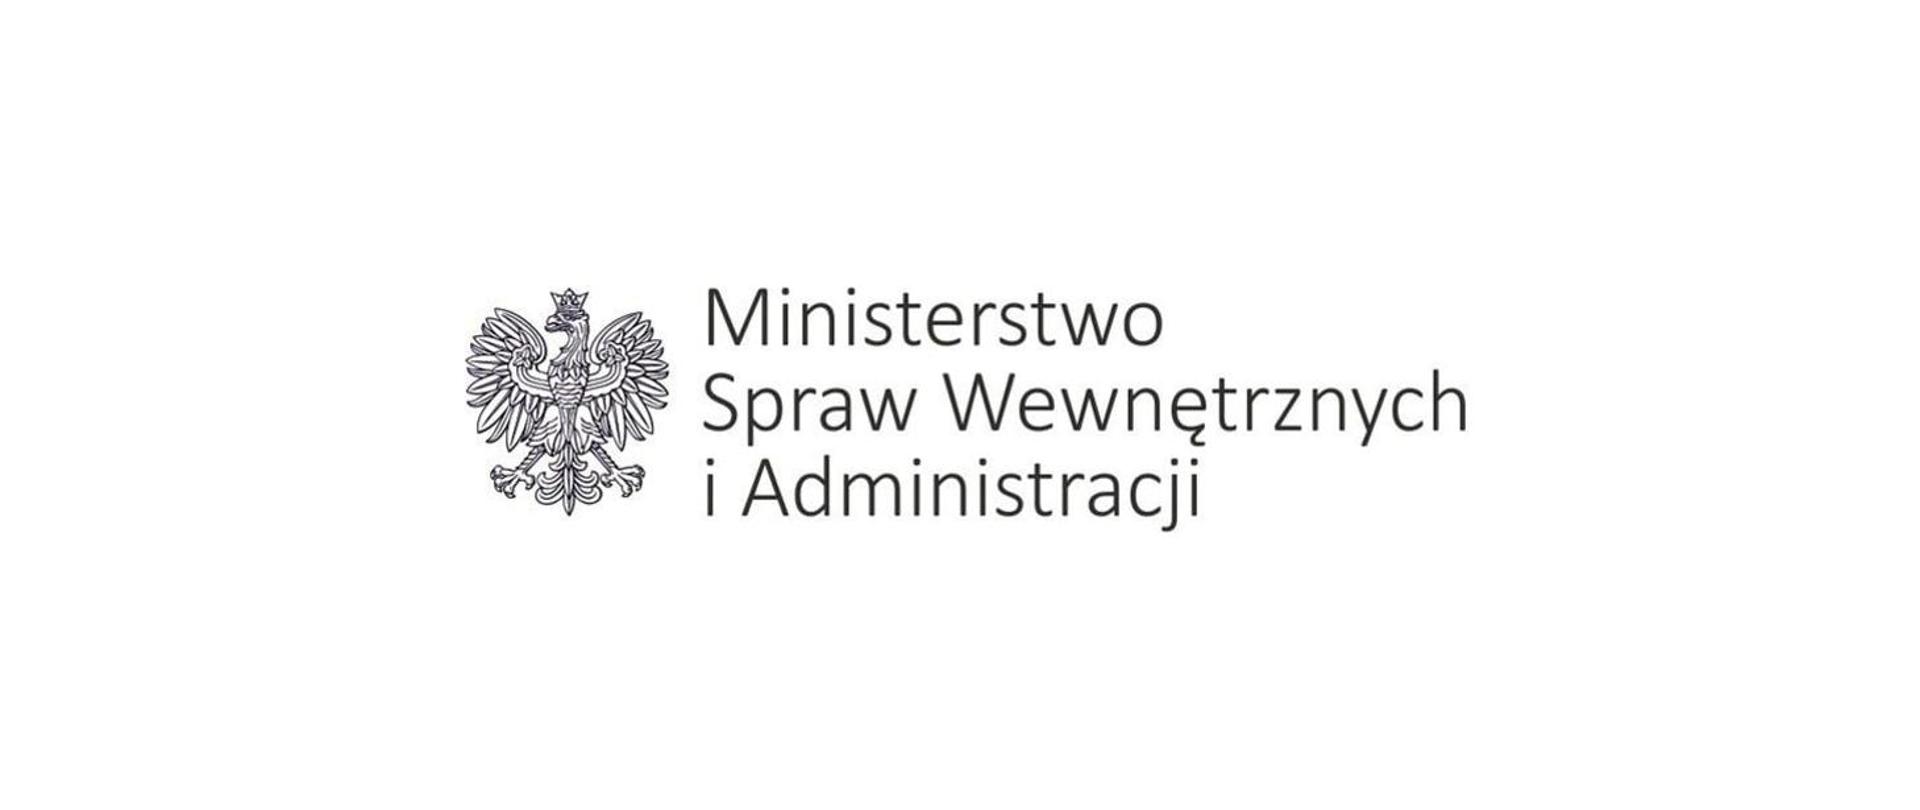 Zdjęcie przedstawia orła w koronie oraz napis Ministerstwo Spraw Wewnętrznych i Administracji